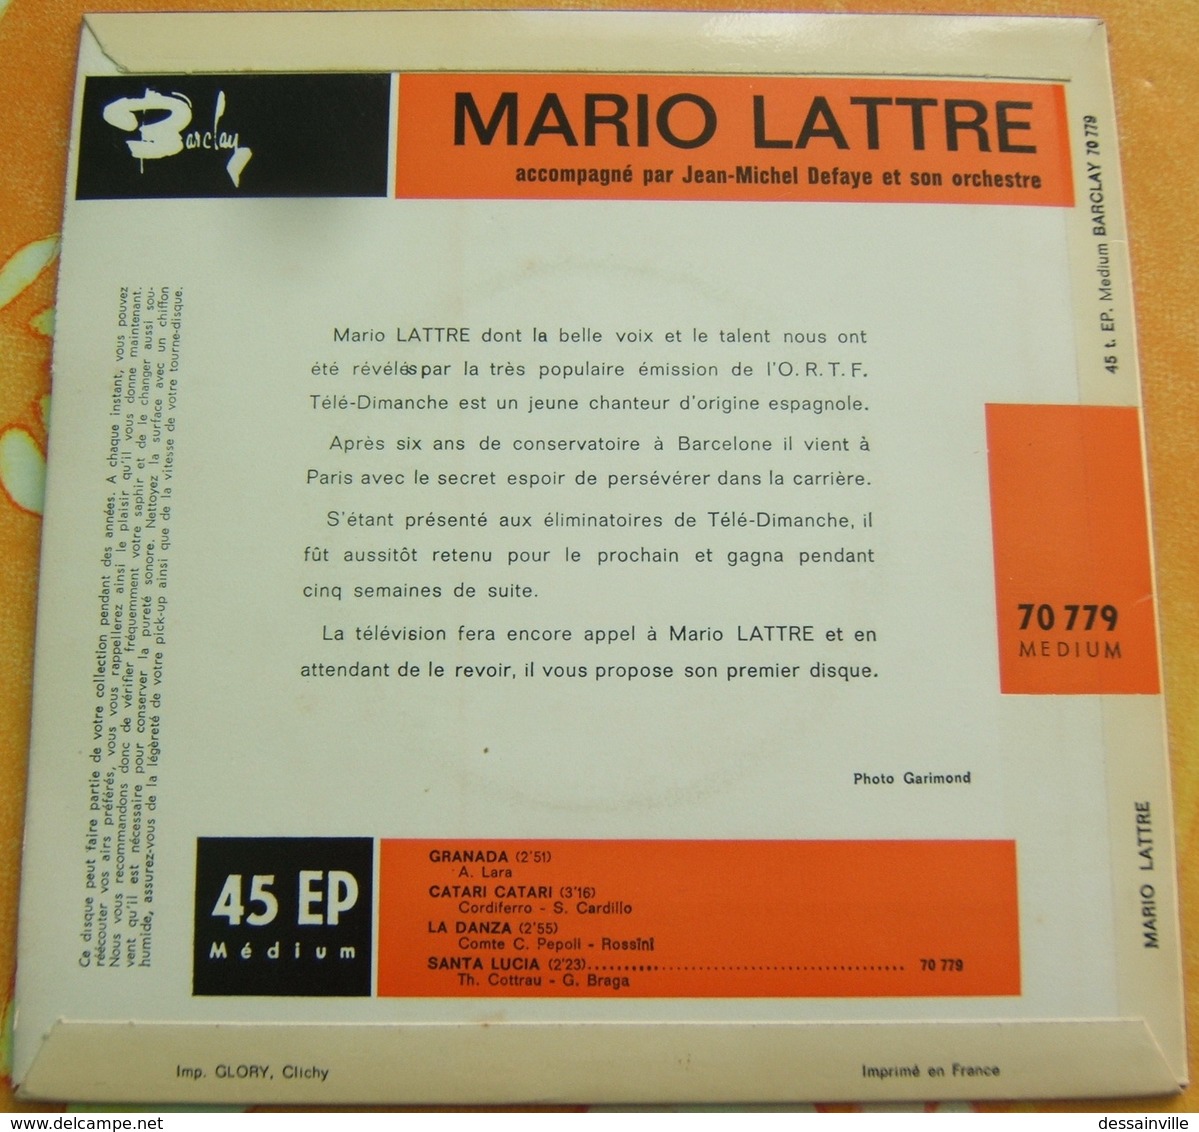 MARIO LATTRE 45 Tours - GRANADA / CATARI CATARI / LA DANZA / SANTA LUCIA - Révélation TELE-DIMANCHE - Sonstige - Spanische Musik